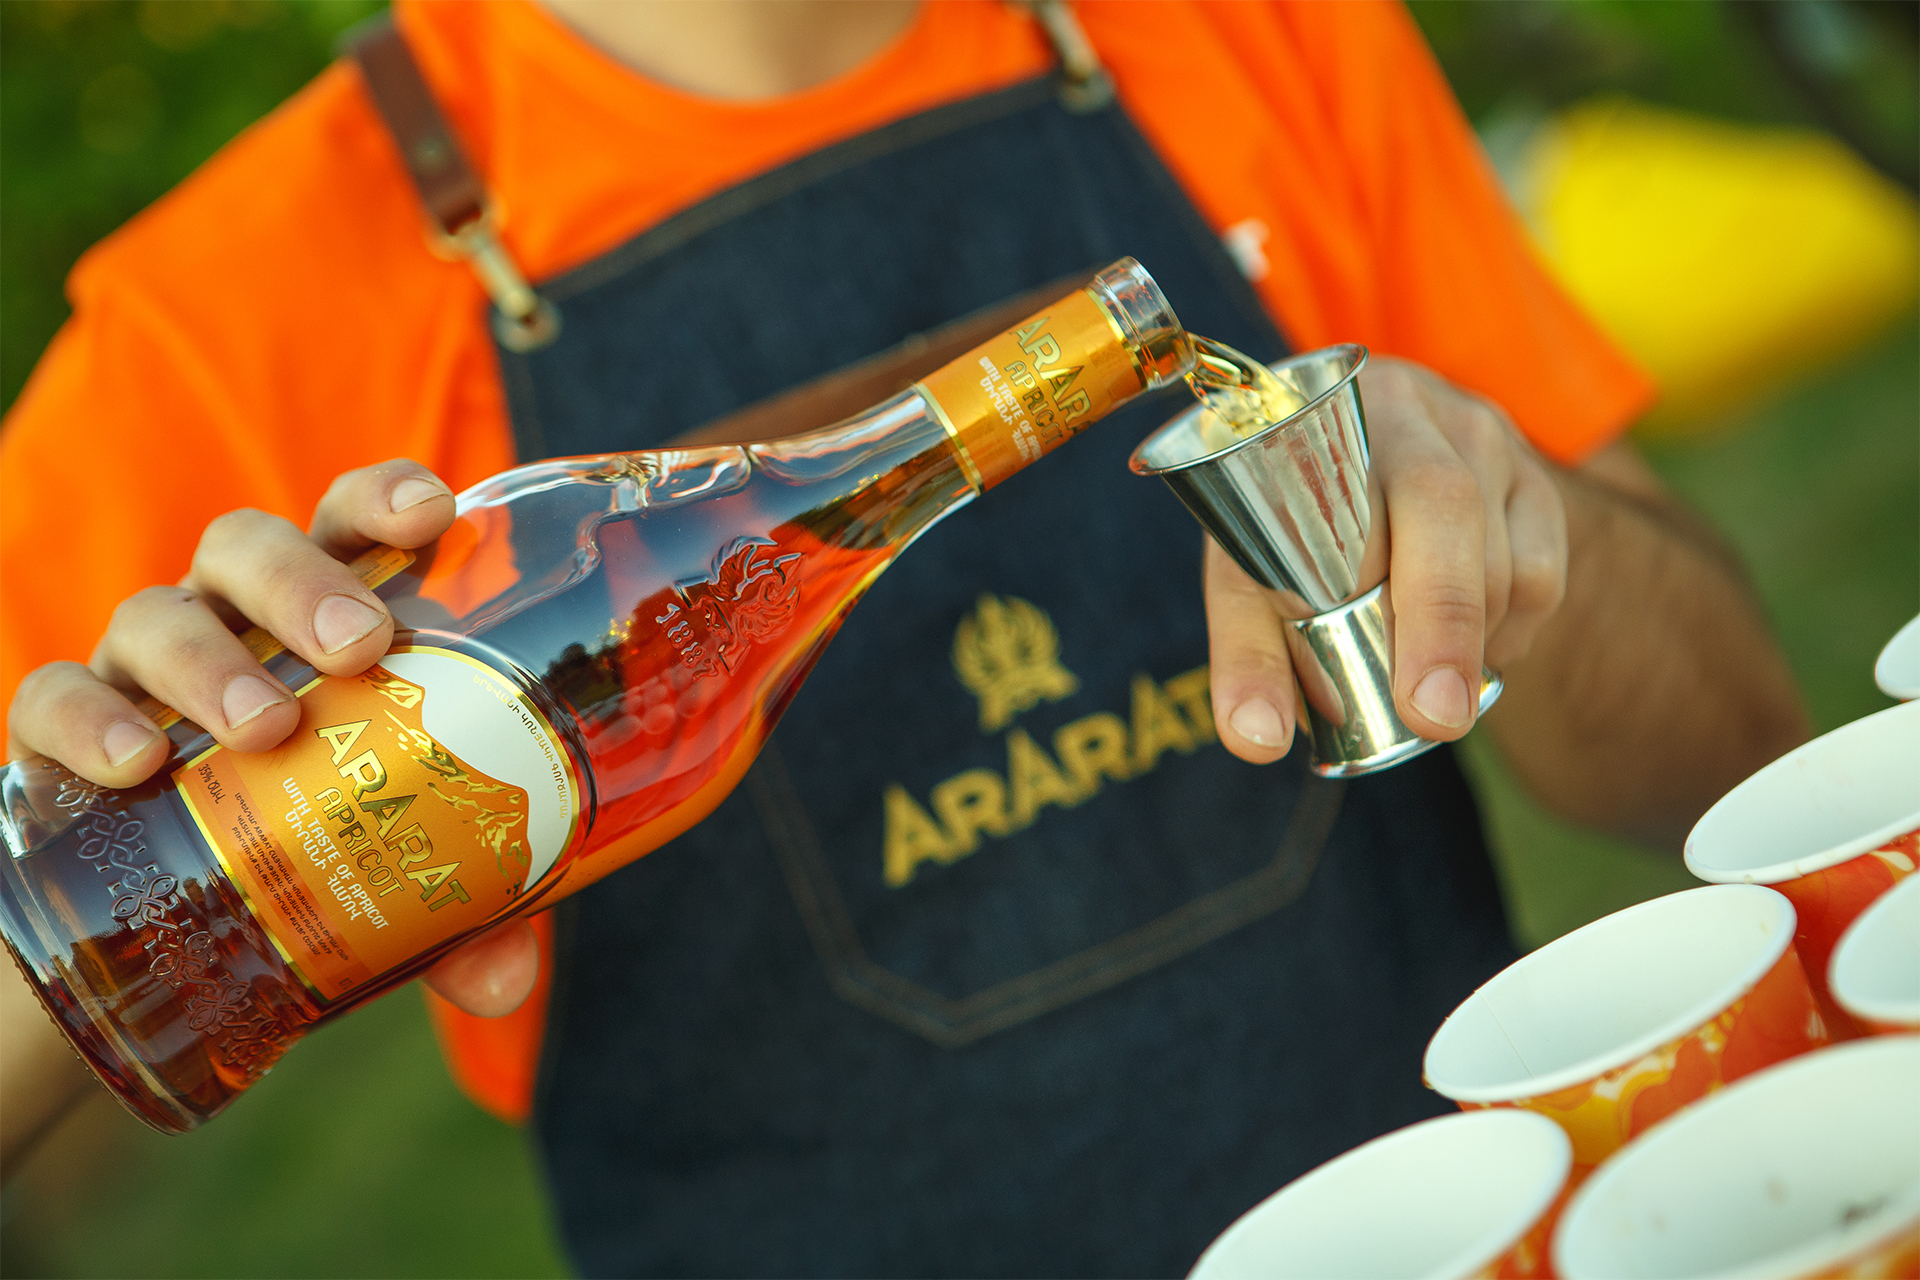 ARARAT Apricot-ը ոսկե մեդալ է ստացել